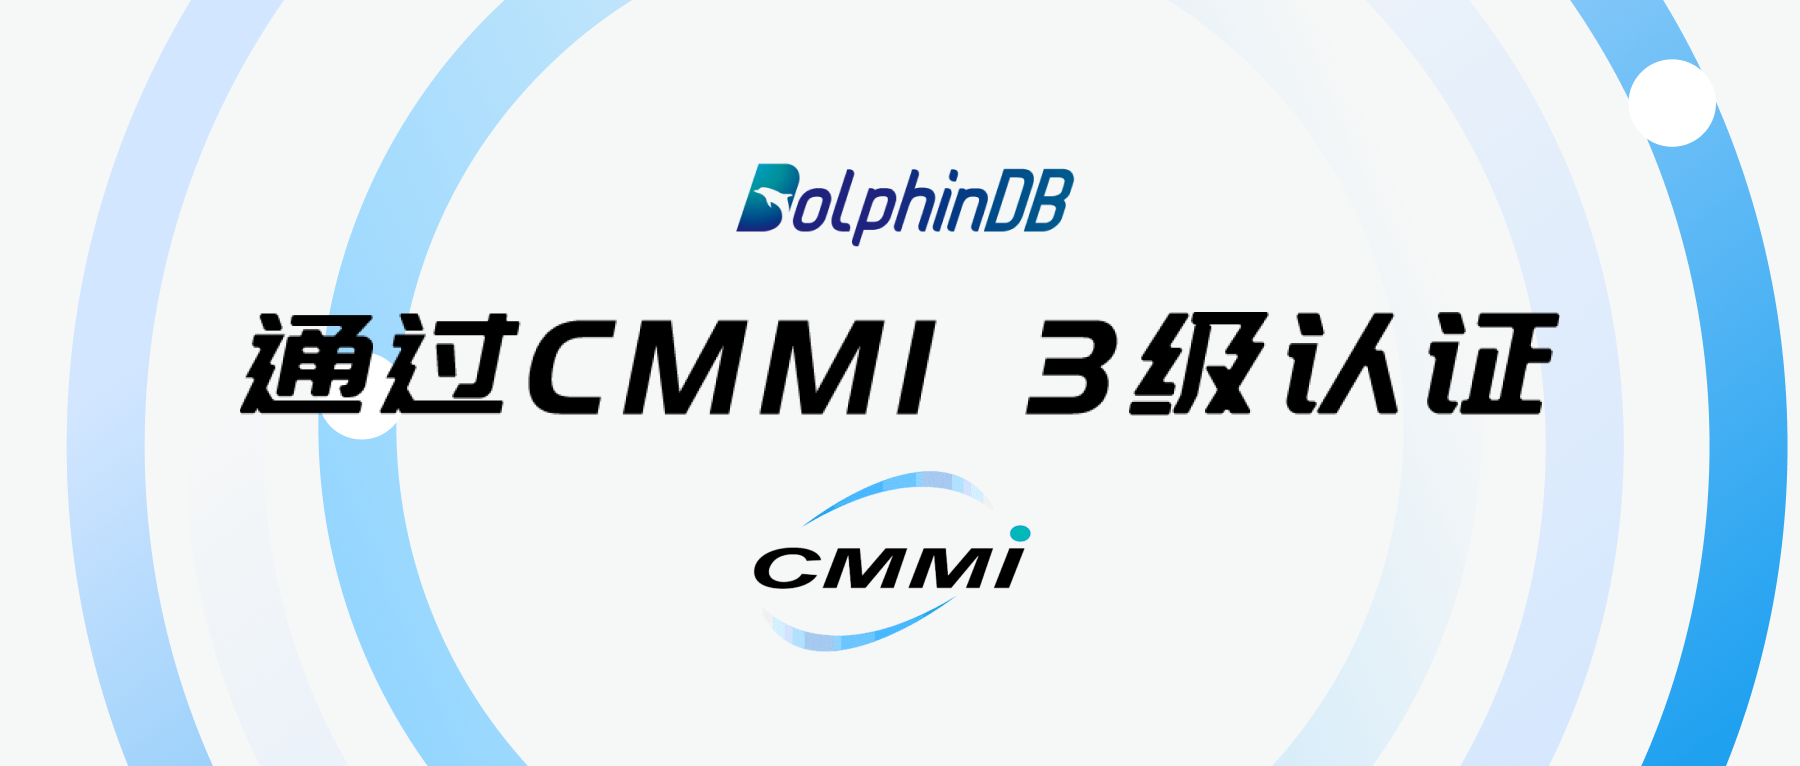 荣誉快讯丨DolphinDB 正式通过 CMMI 3级认证!